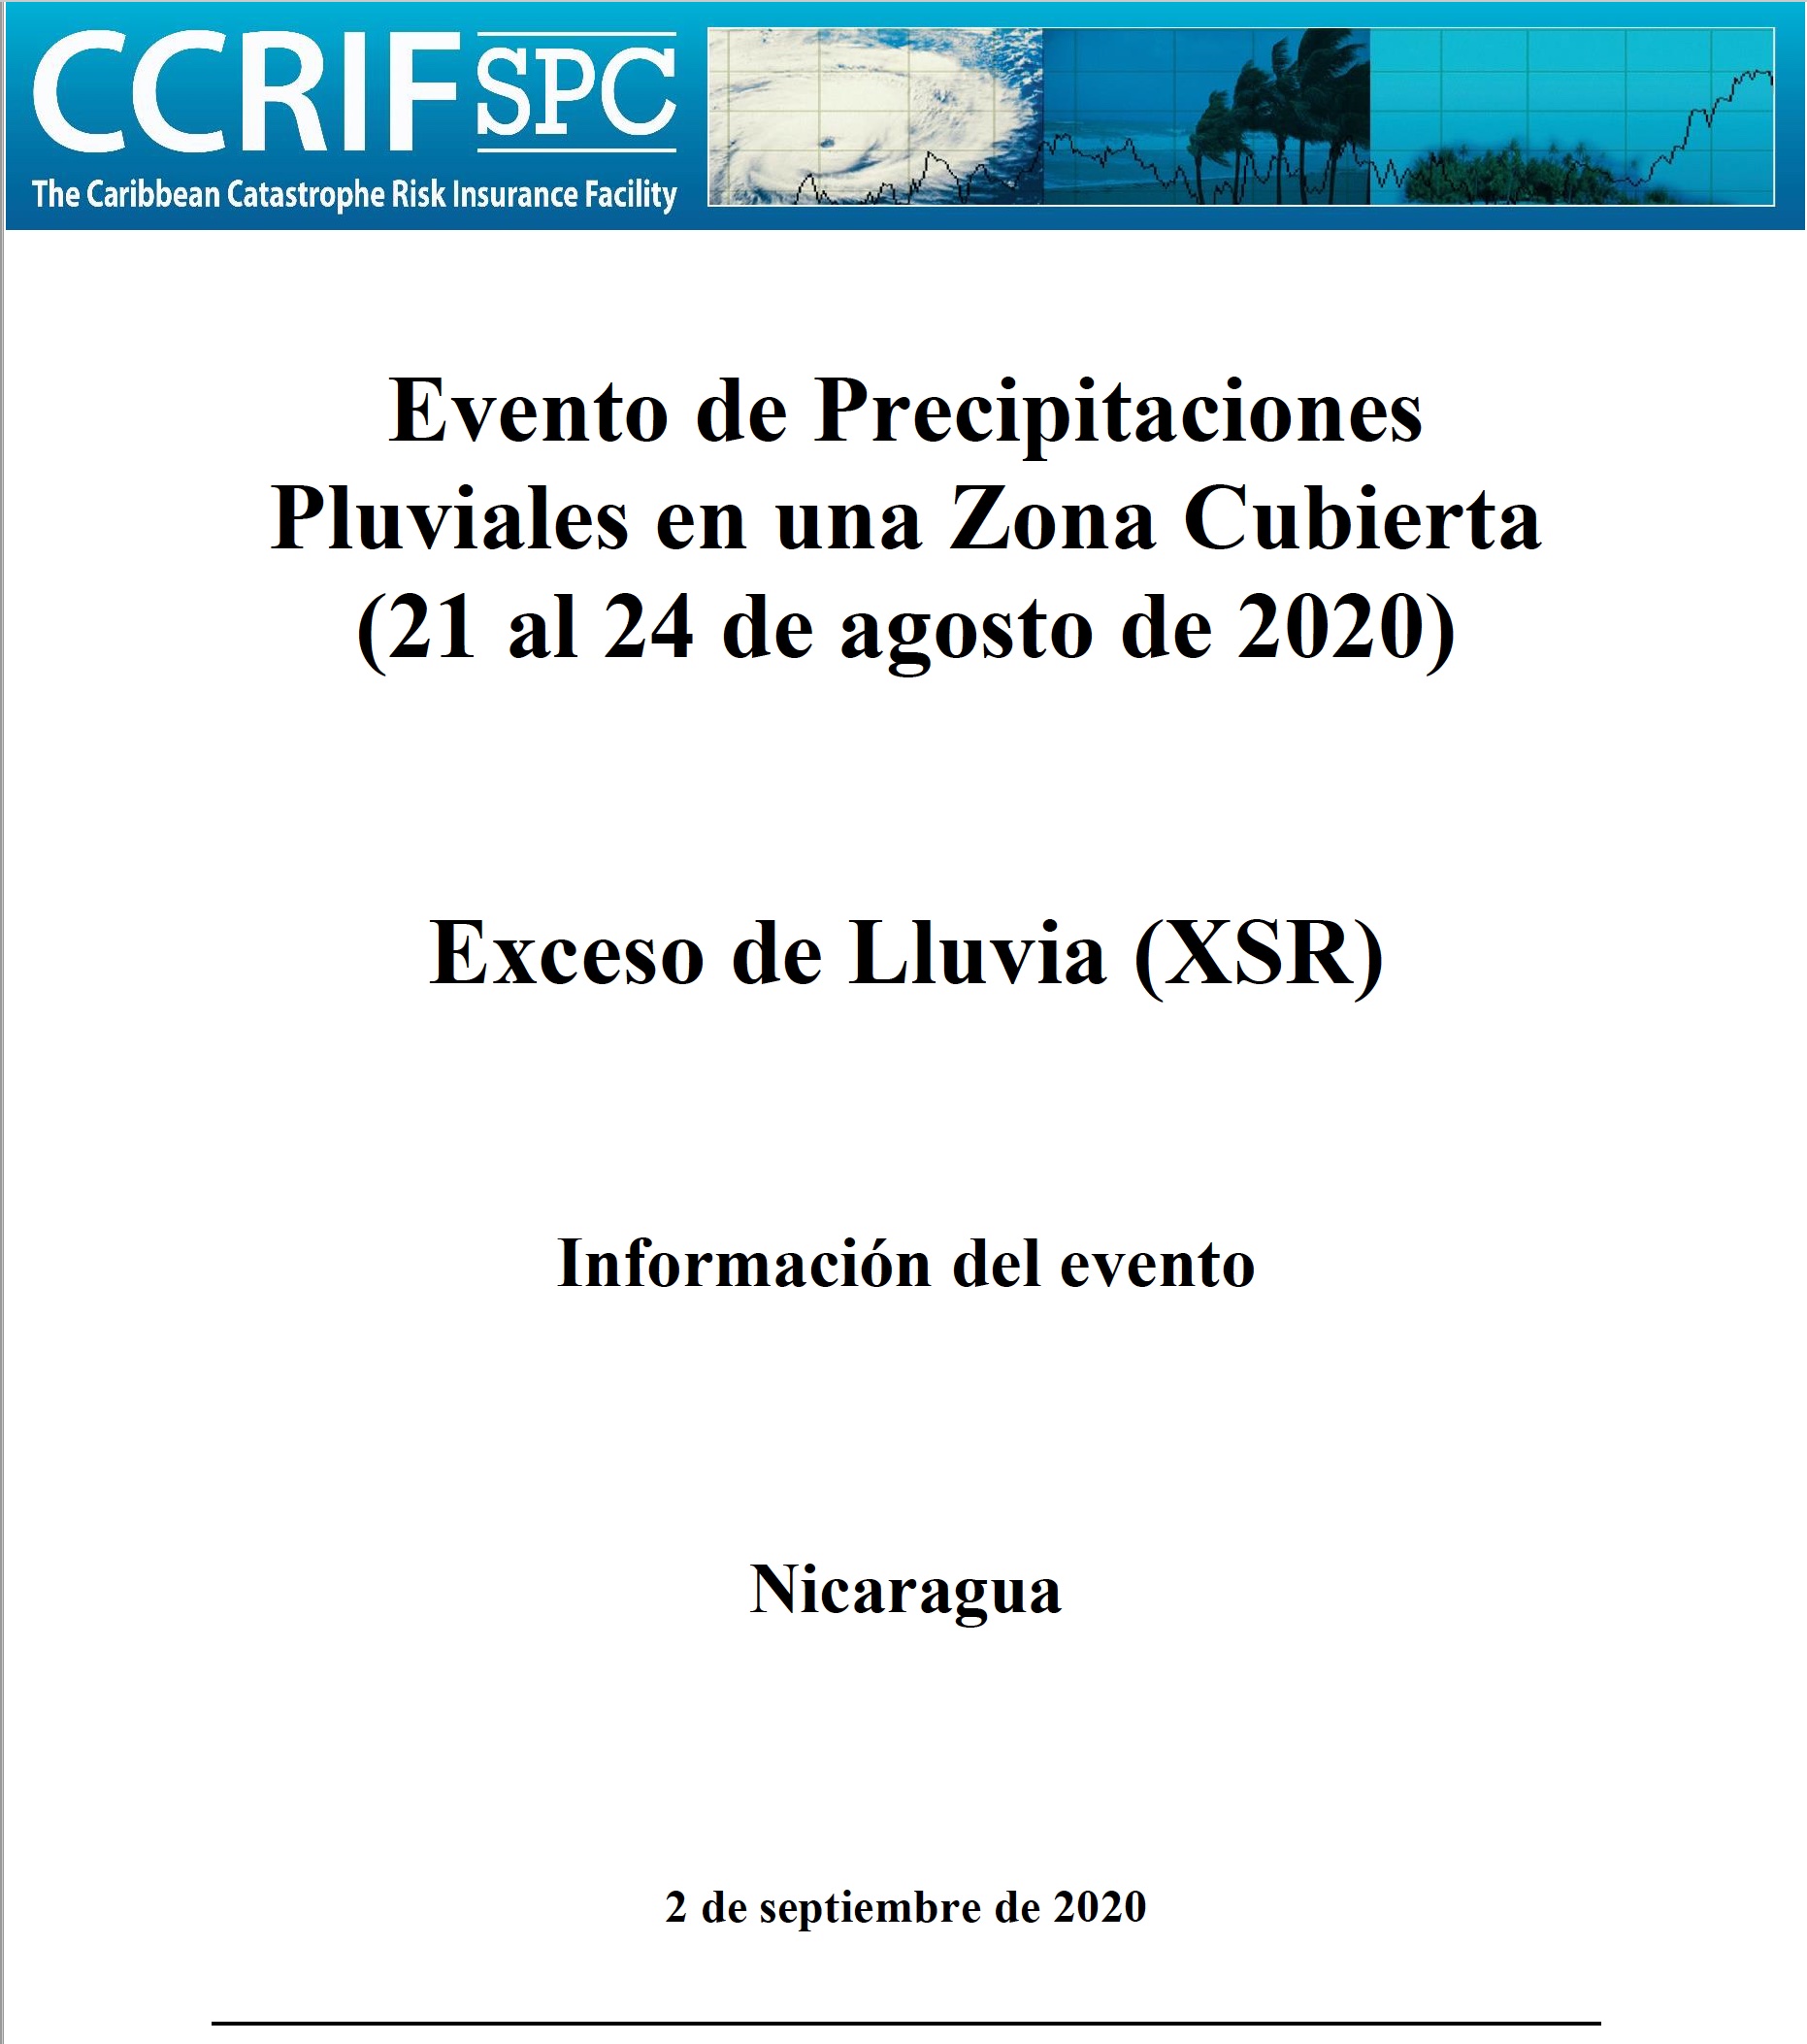 Información del evento - Exceso de Precipitaciones - Episodio de Precipitaciones Pluviales en una Zona Cubierta - Nicaragua - 2 de septiembre de 2020